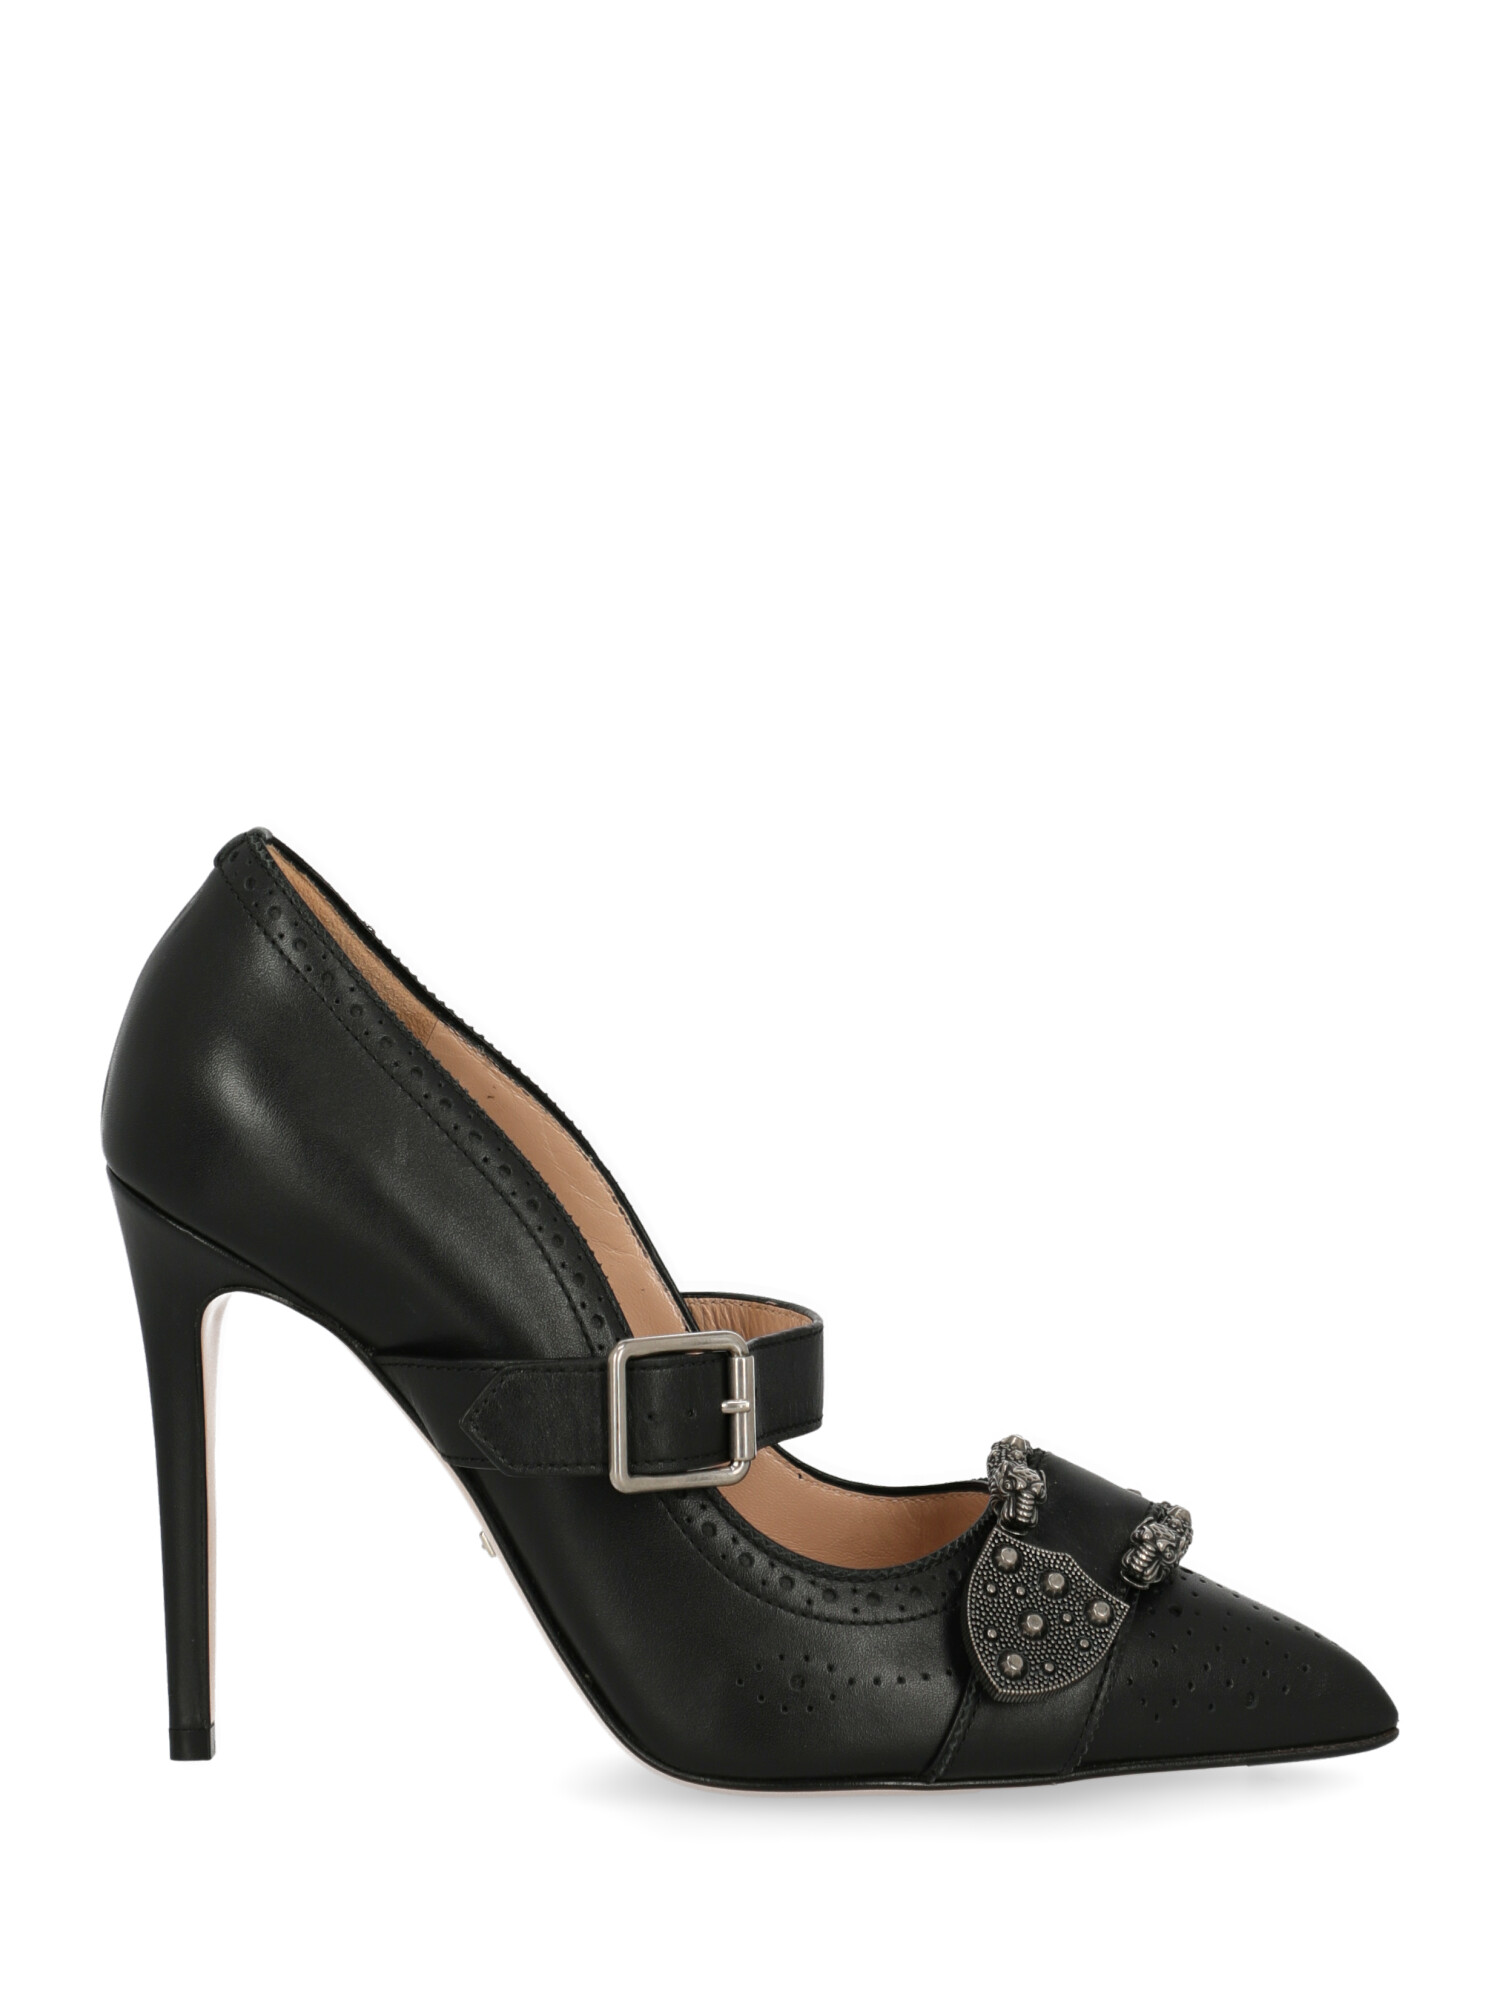 Escarpins Pour Femme - Gucci - En Leather Black - Taille: IT 39.5 - EU 39.5